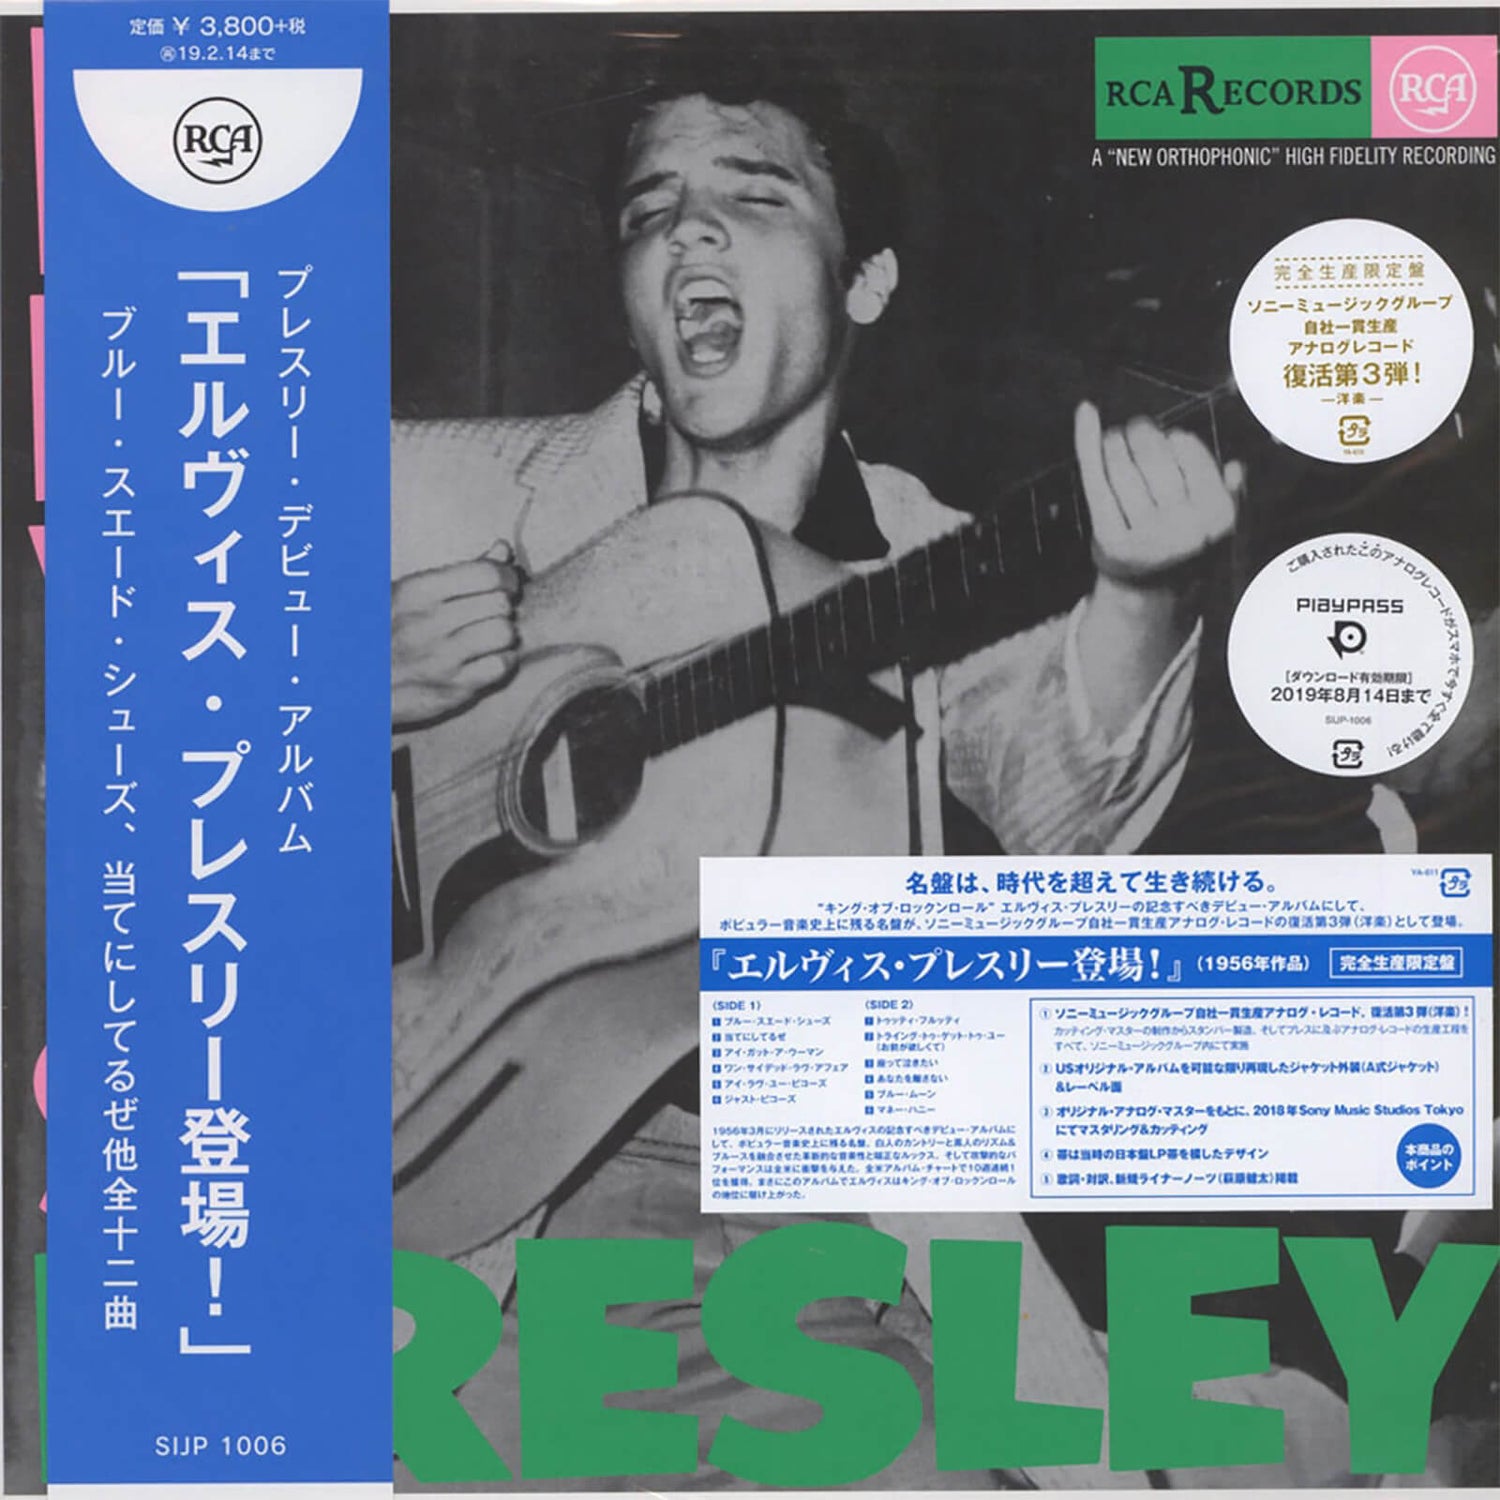 Elvis Presley - Elvis Presley Vinyl Japanese Edition